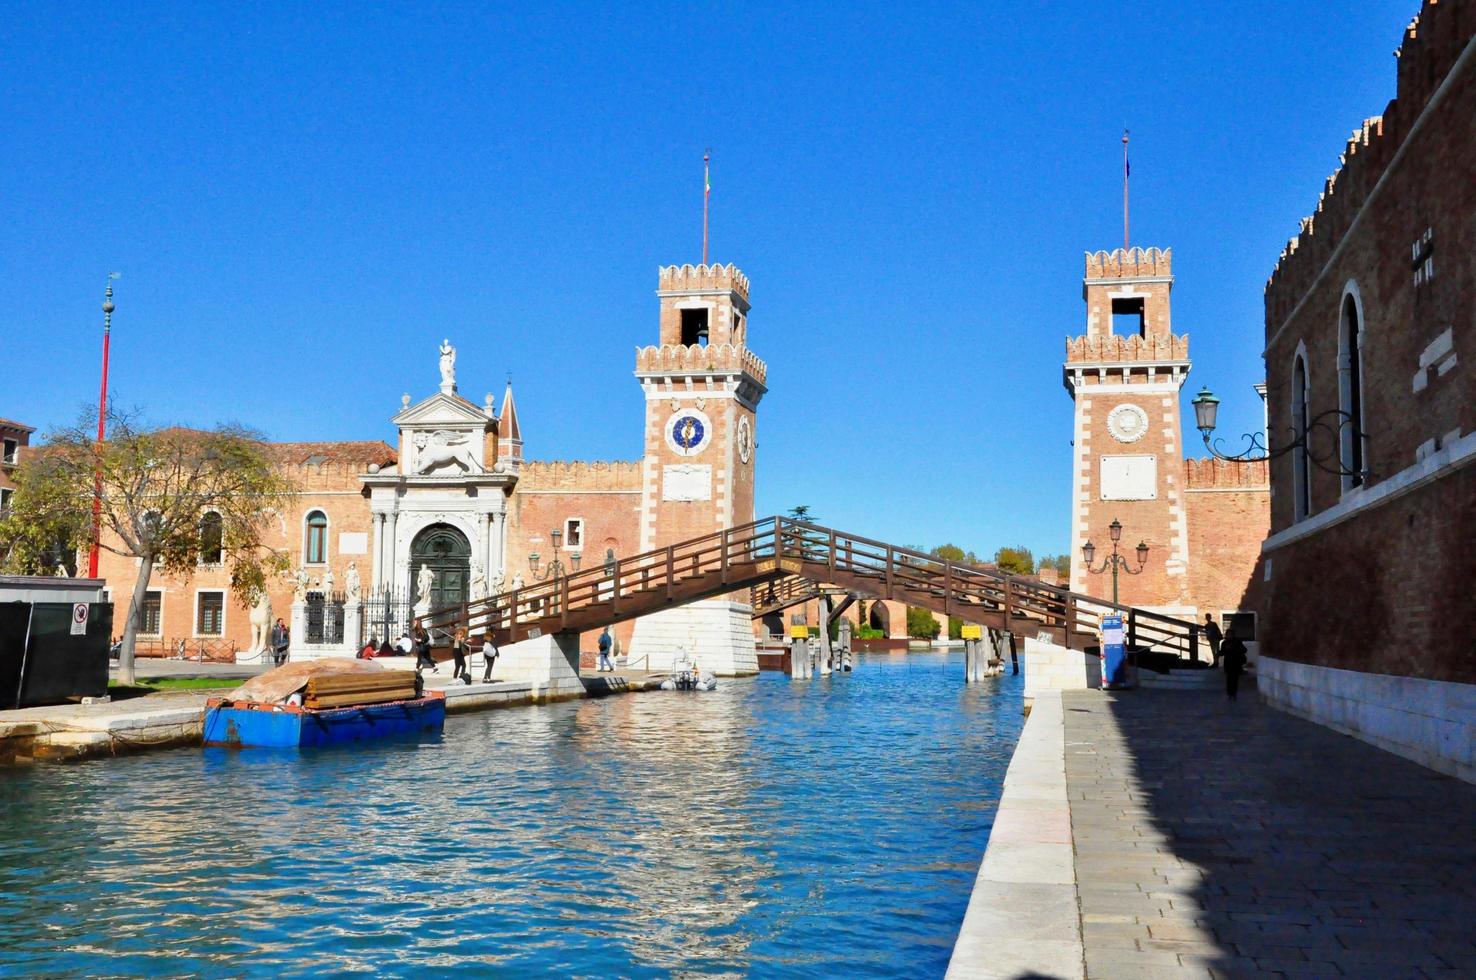 parte no turística de venecia con silencio vacío edificios coloridos, ventanas, calles y barcos foto